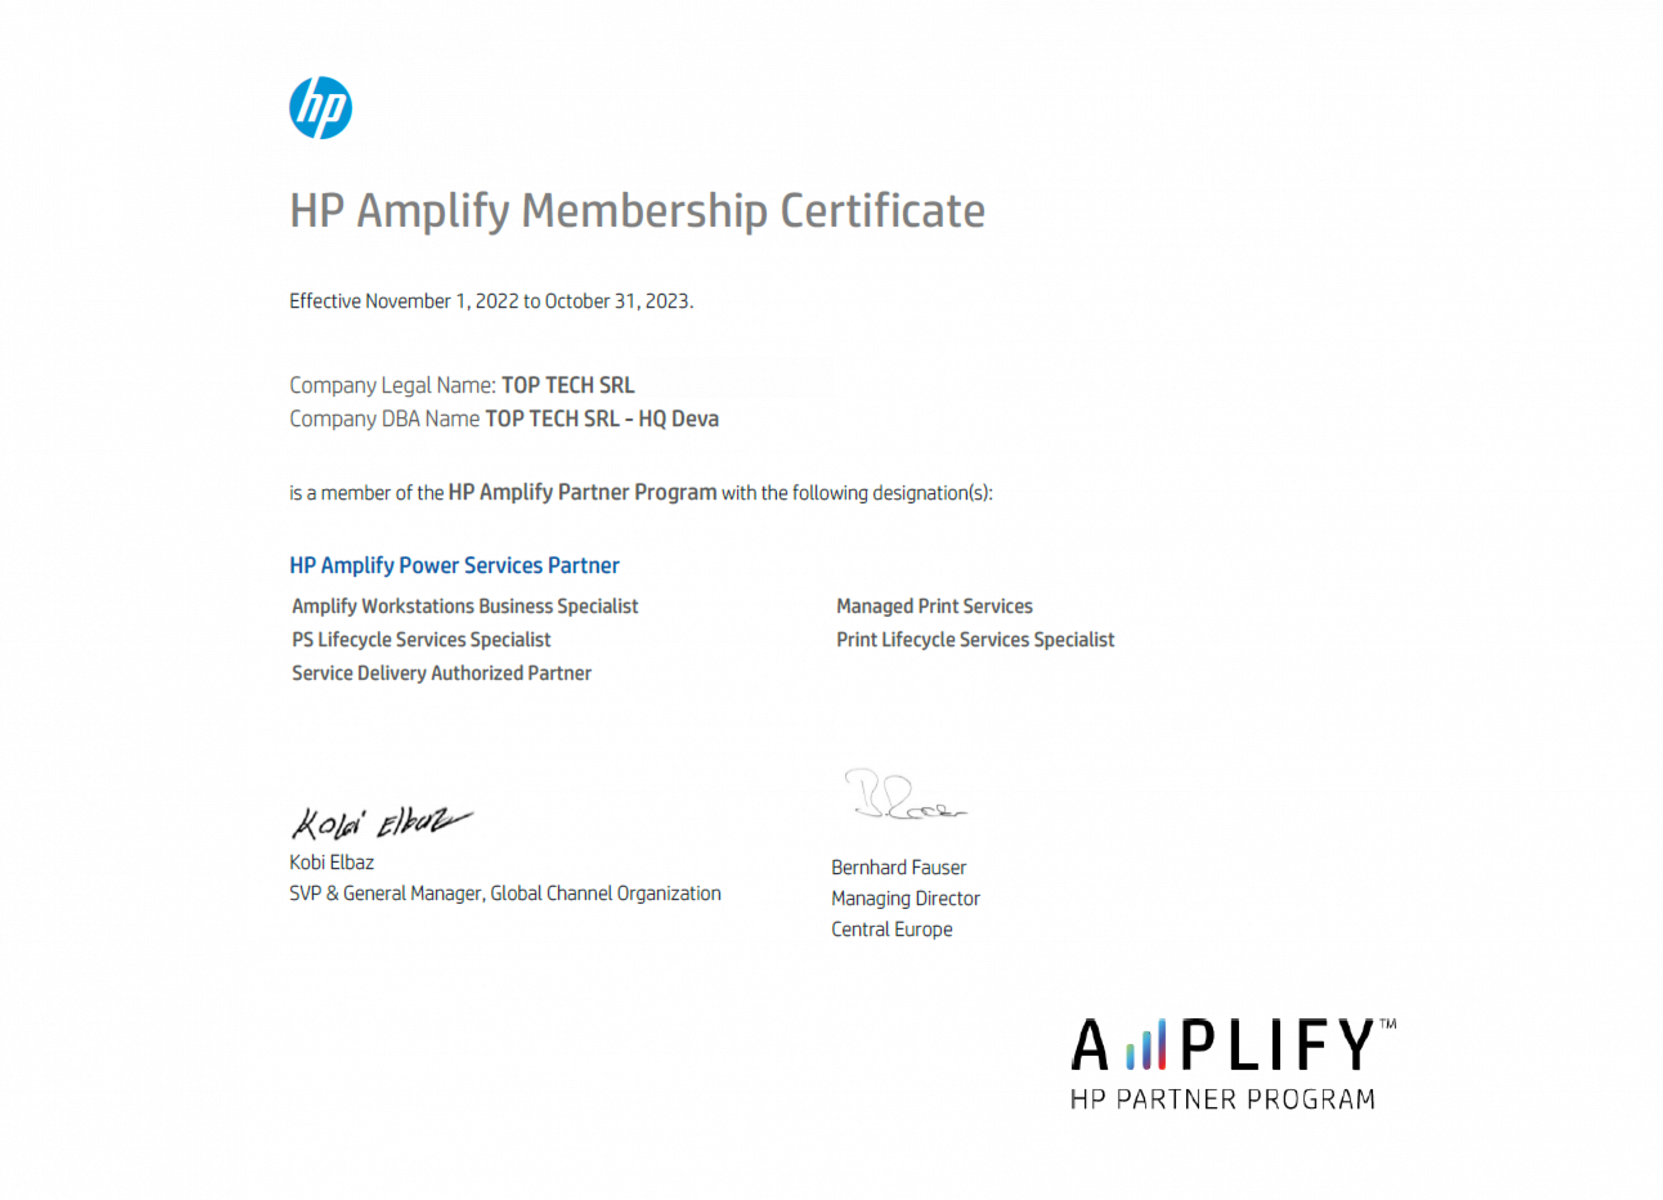 Top Tech - Member of HP Amplify Partner Program